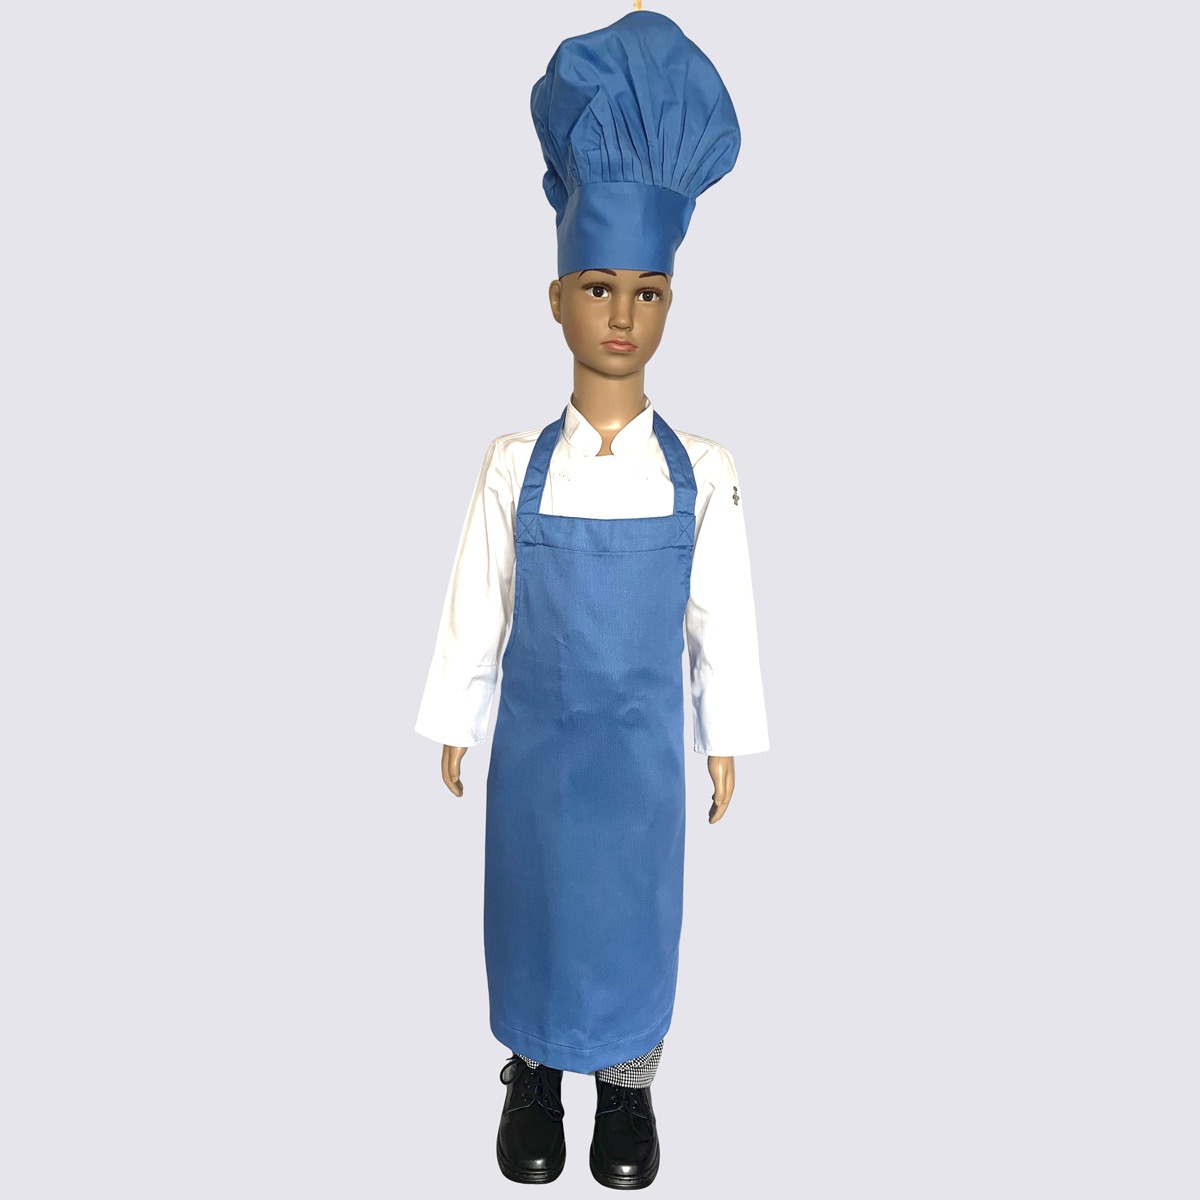 Junior Chef Blue Apron & Cap